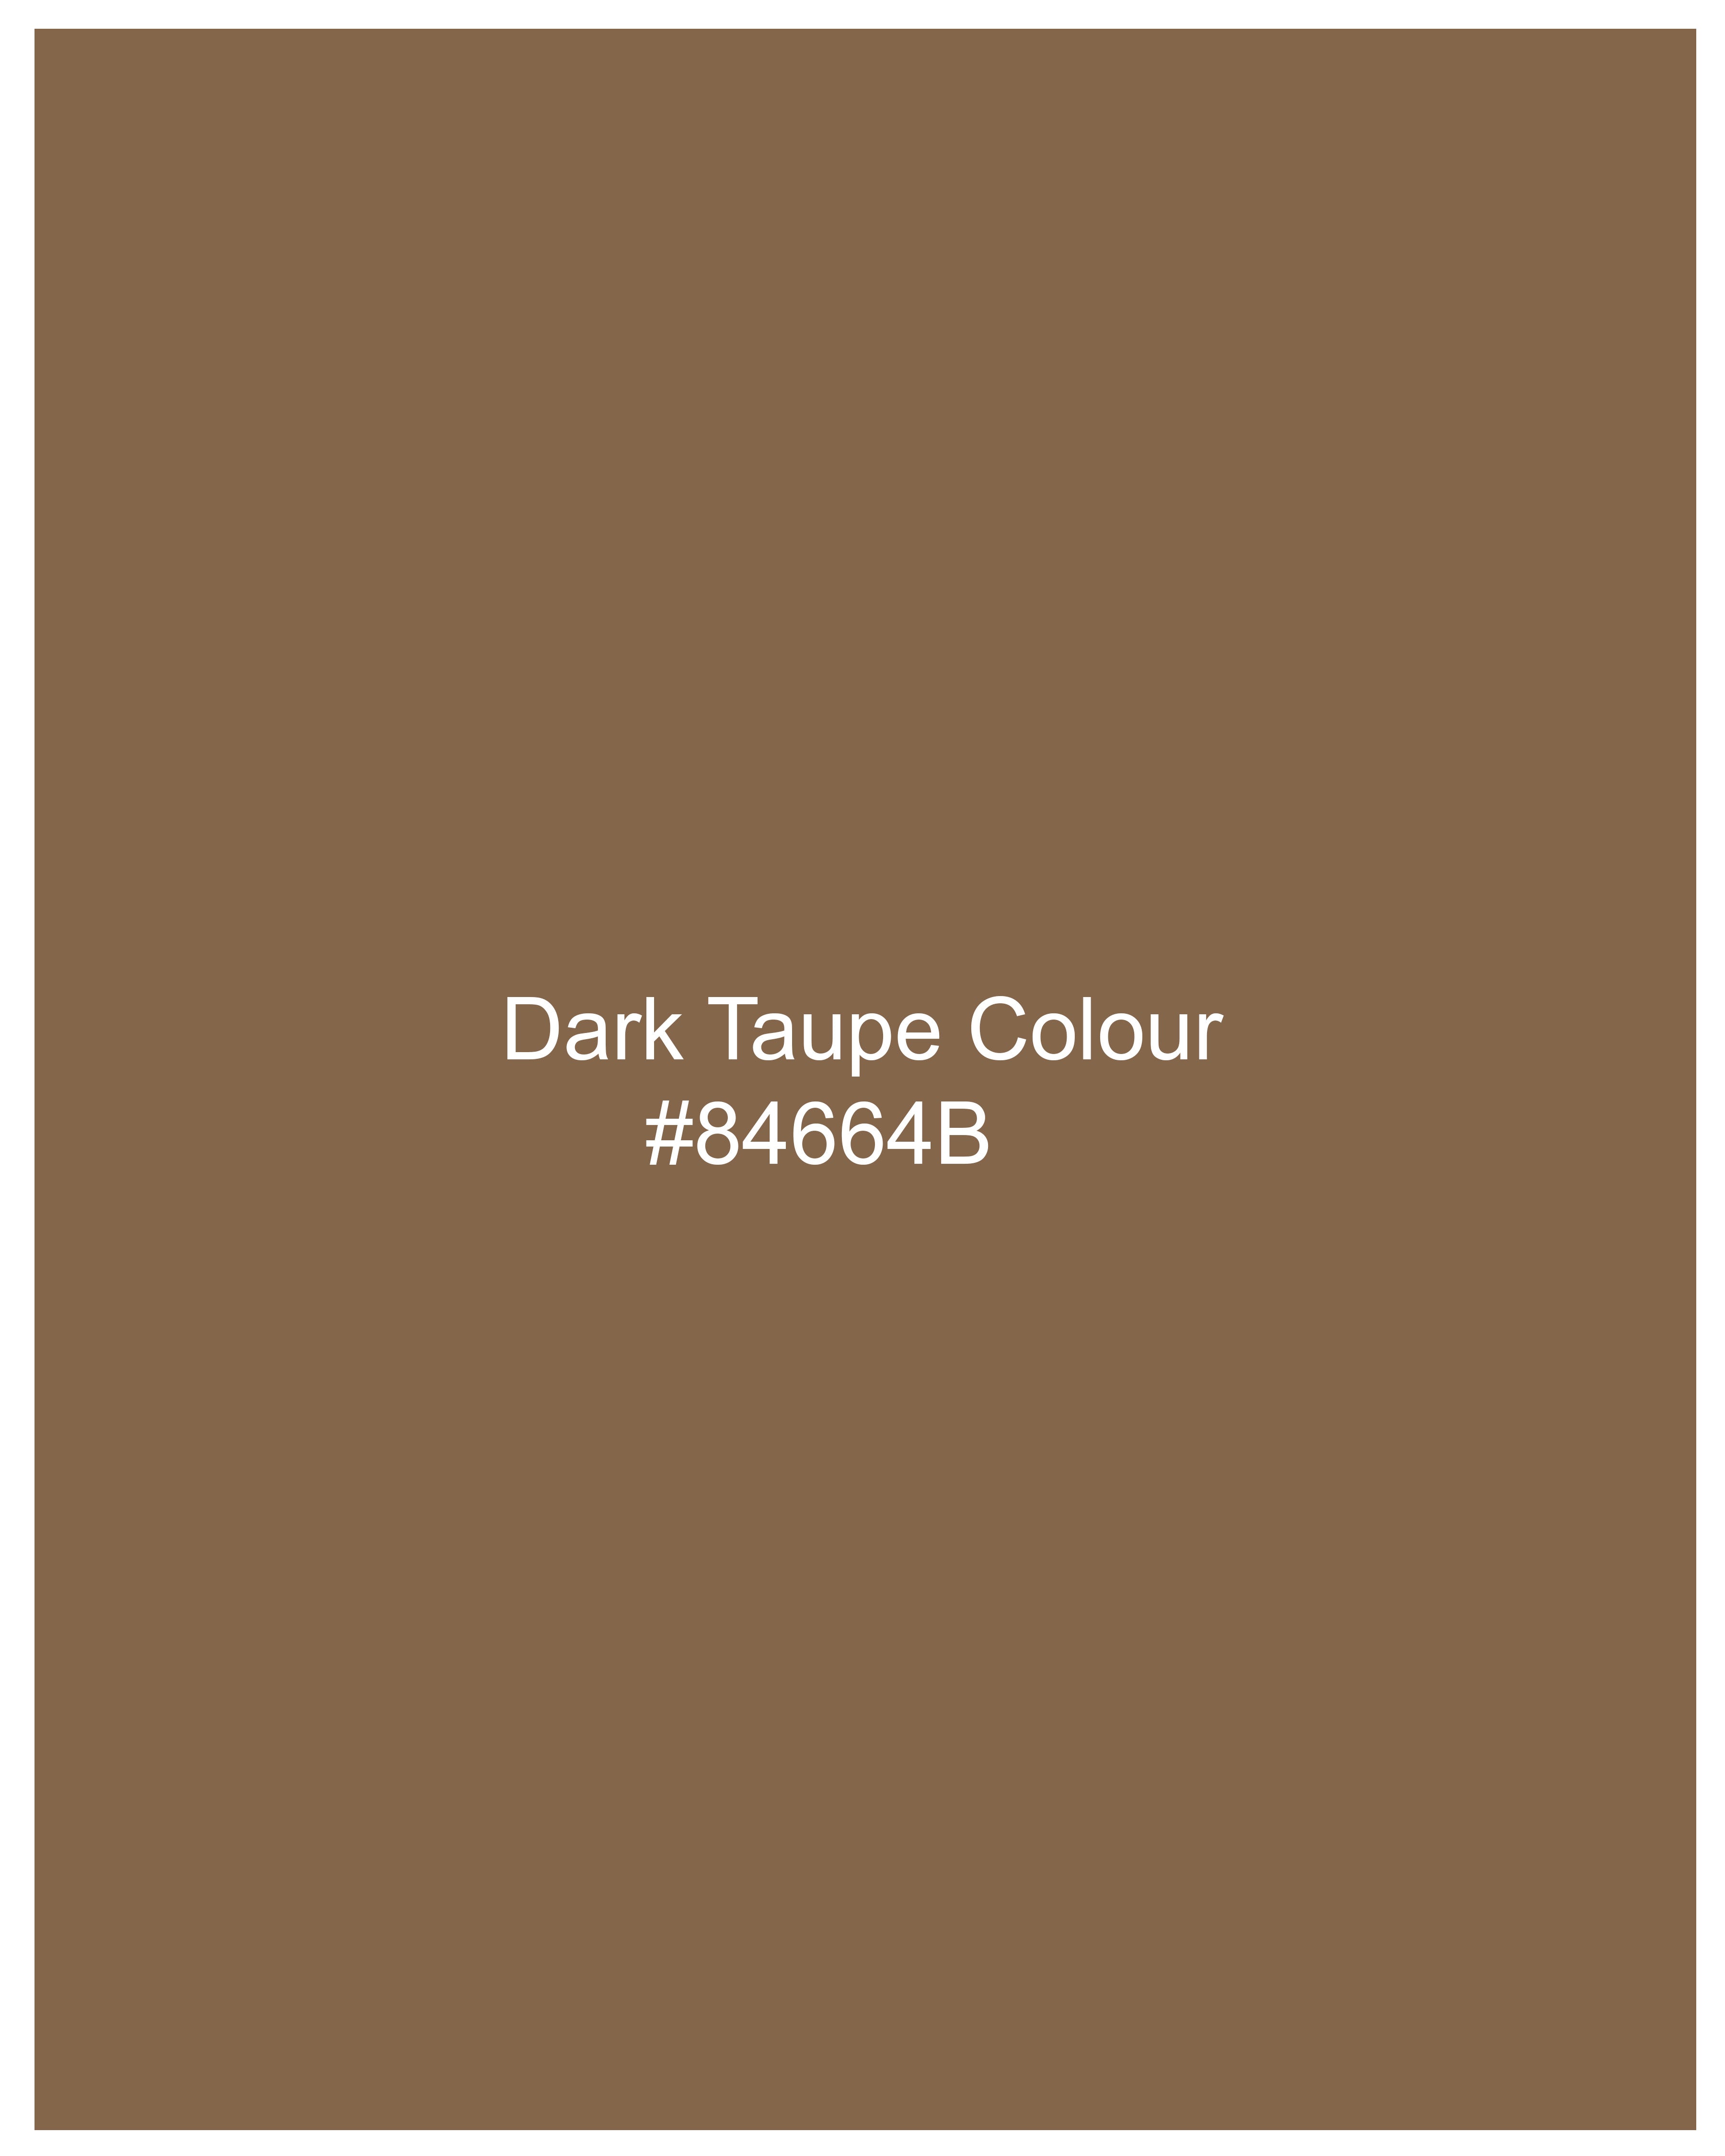 Dark Taupe Brown Rinse Denim J167-32, J167-34, J167-36, J167-38, J167-40